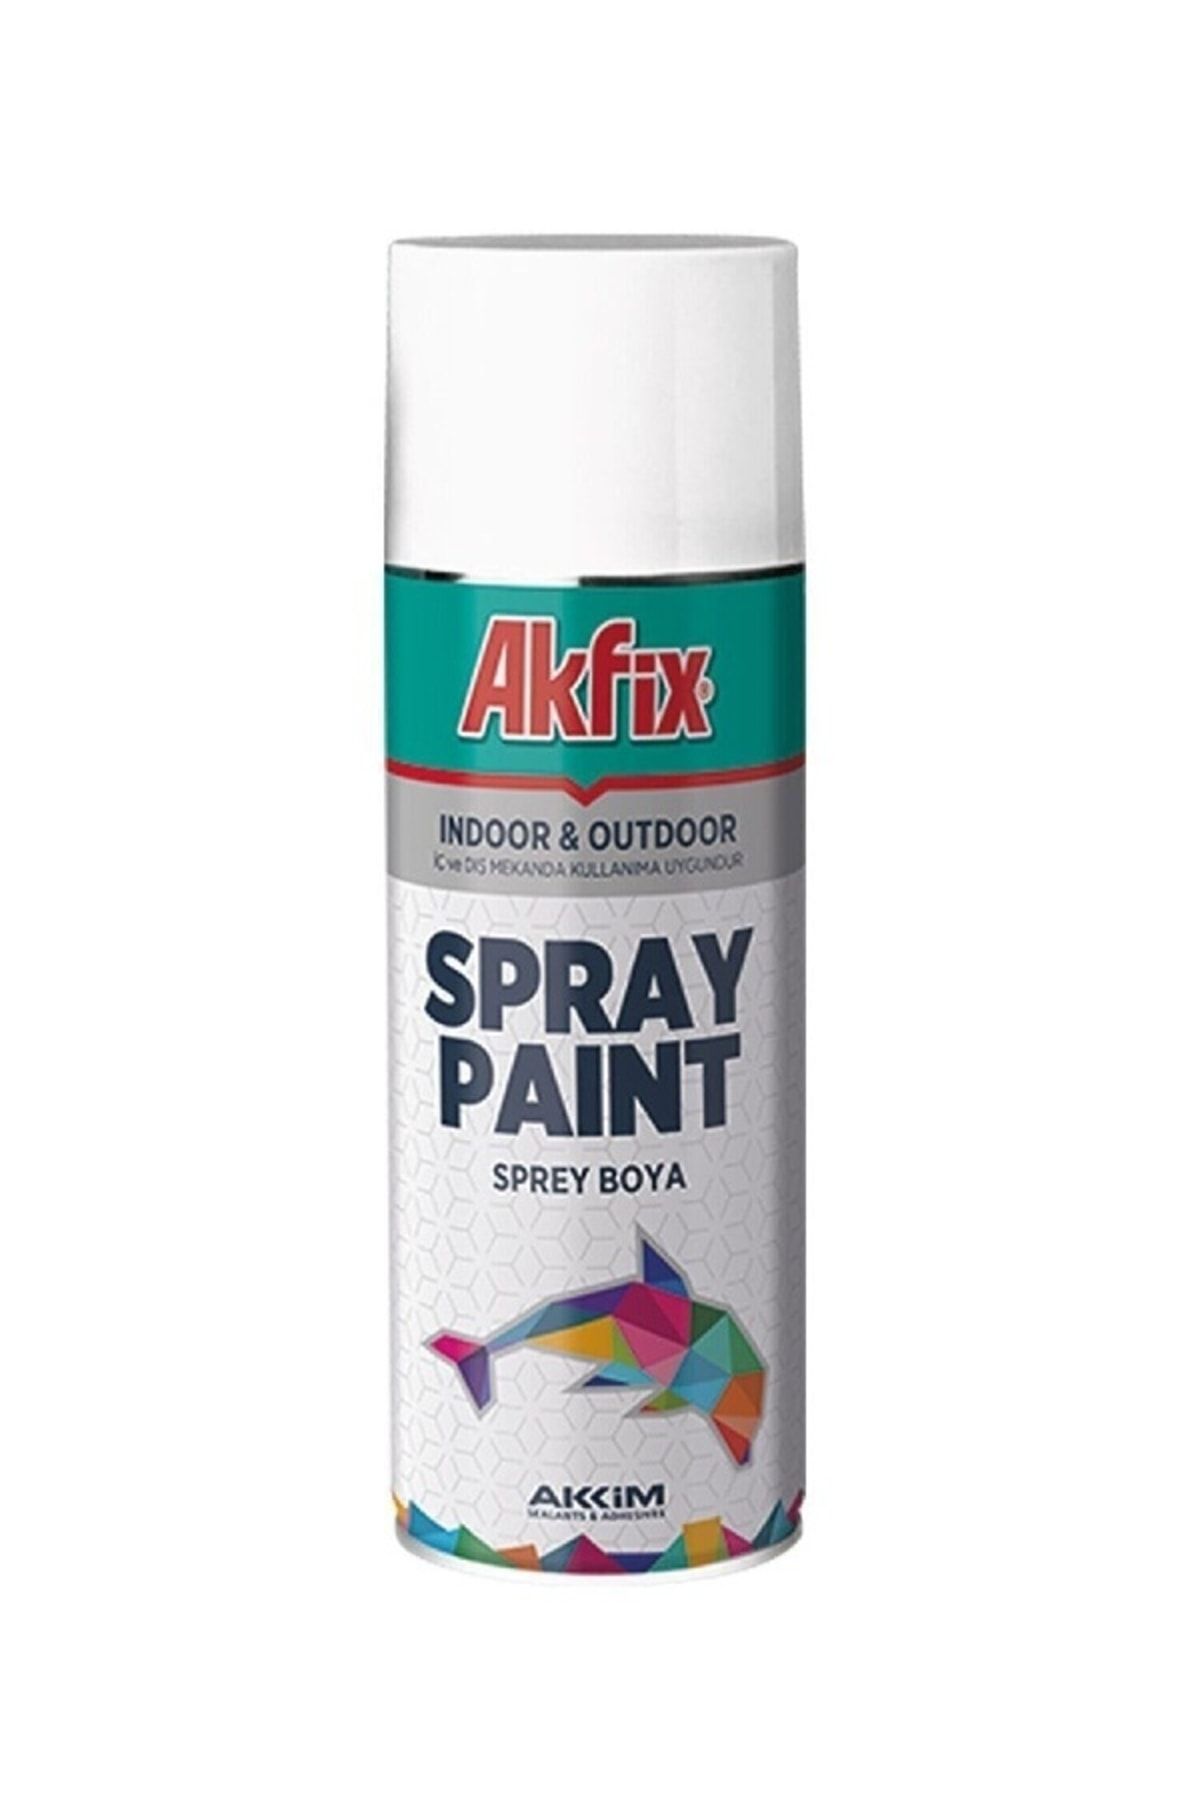 Akfix Spray Boya Renk Seçiniz.